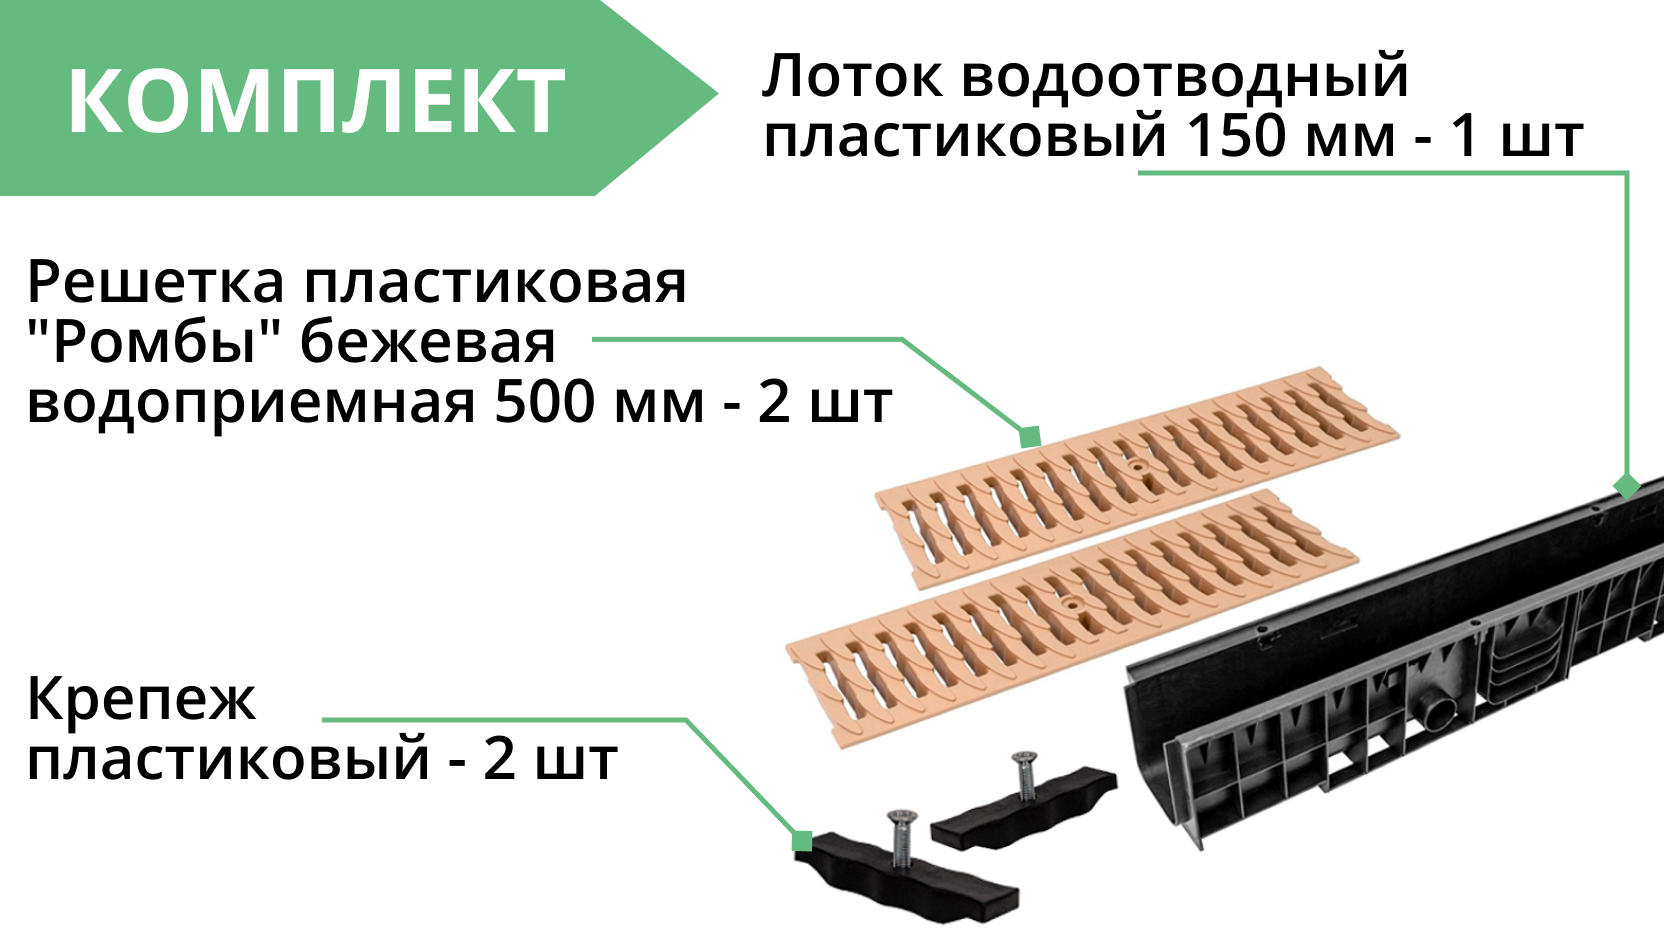 Комплект: Лоток Европартнер 150 мм с пластиковыми решетками бежевыми "Ромбы" 1 метр 3